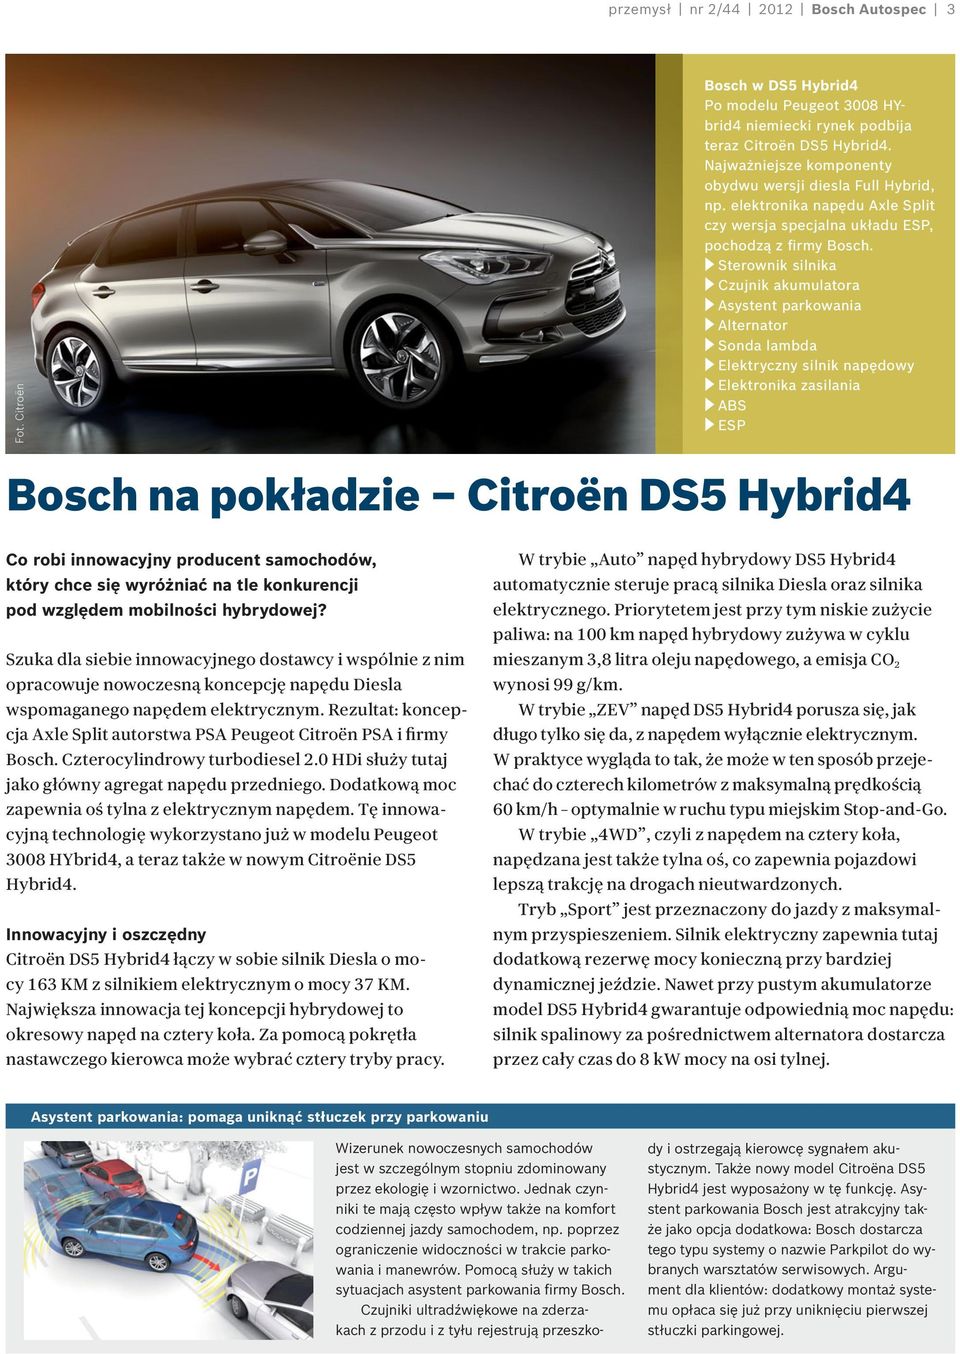 Sterownik silnika Czujnik akumulatora Asystent parkowania Alternator Sonda lambda Elektryczny silnik napędowy Elektronika zasilania ABS ESP Bosch na pokładzie Citroën DS5 Hybrid4 Co robi innowacyjny